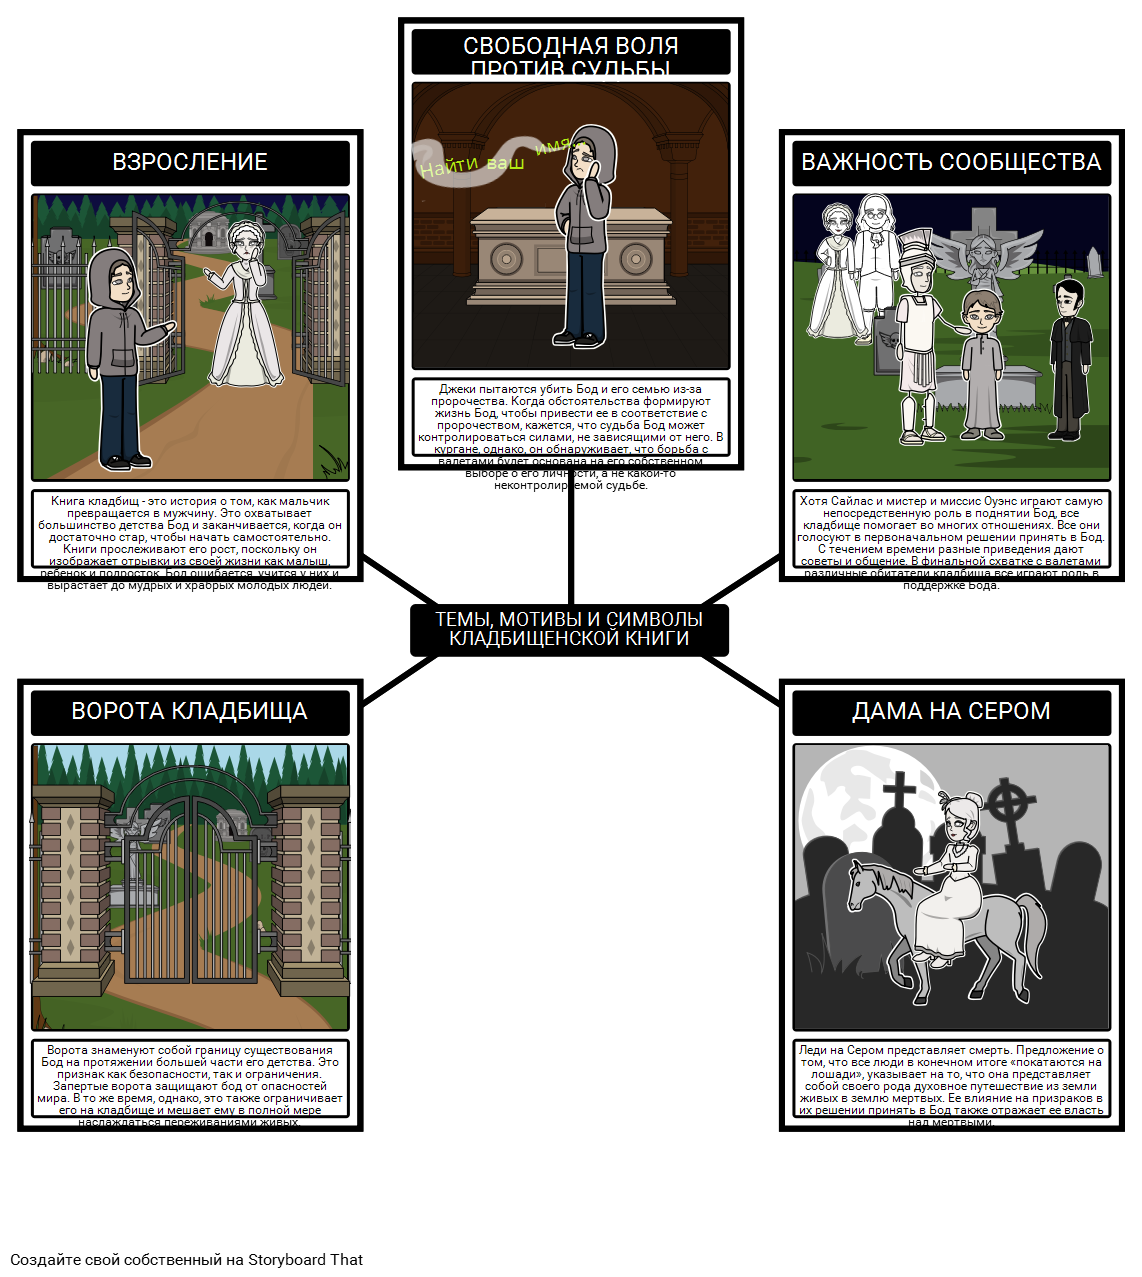 История с Кладбищем Темы, Мотивы и Символы